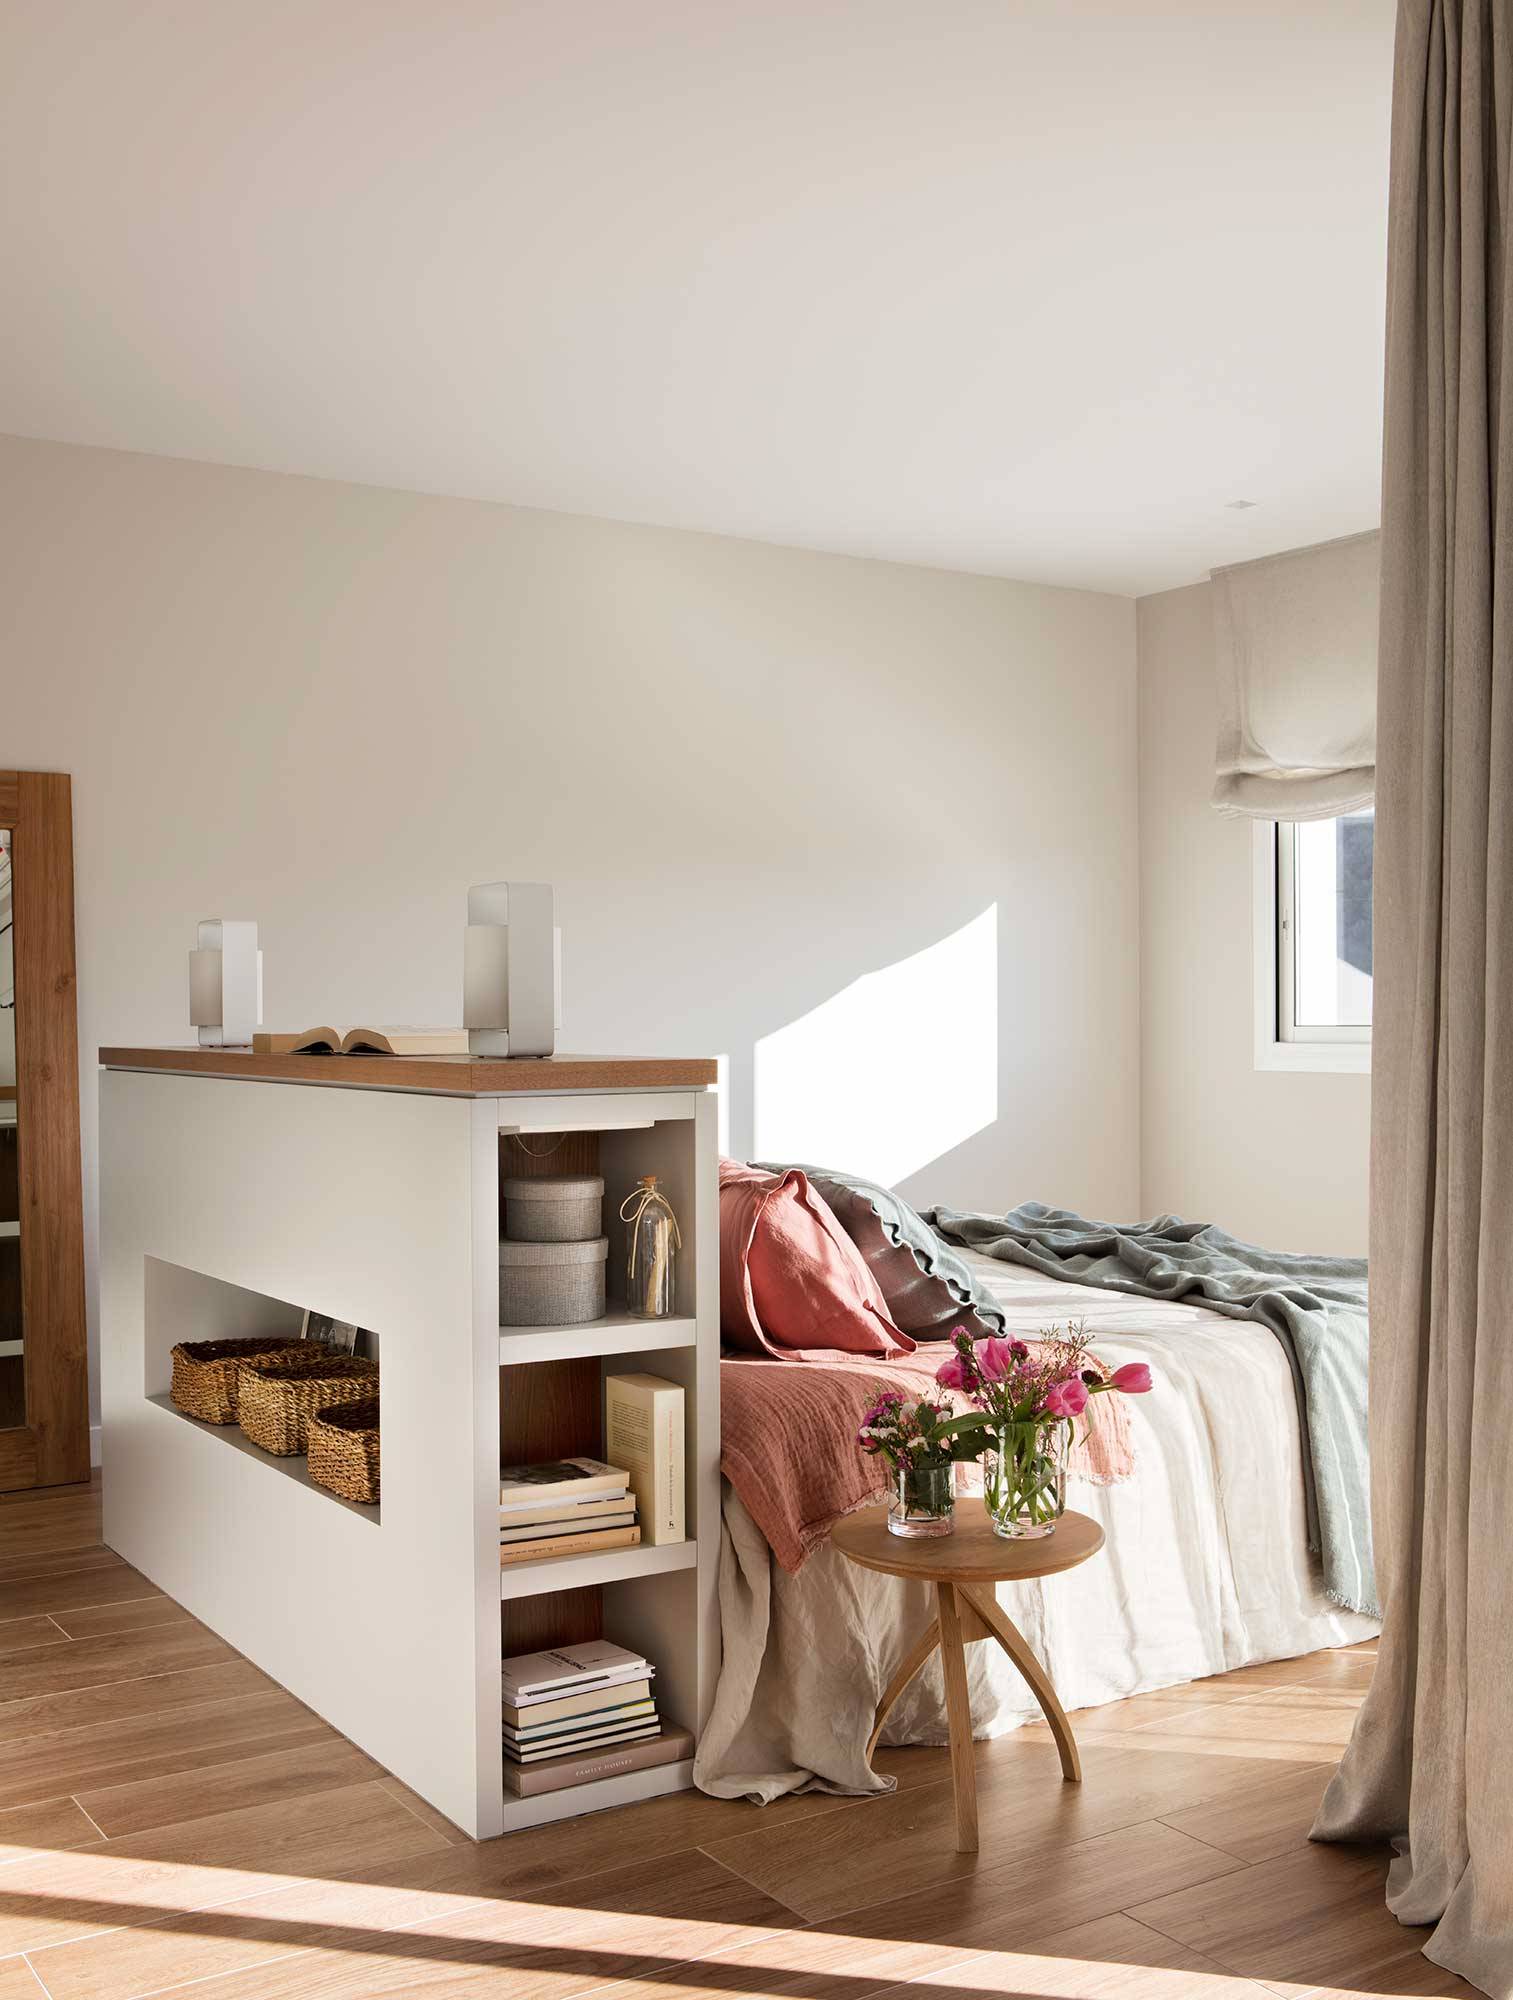 Dormitorio con cama en medio y cabecero murete con hornacian y estantes